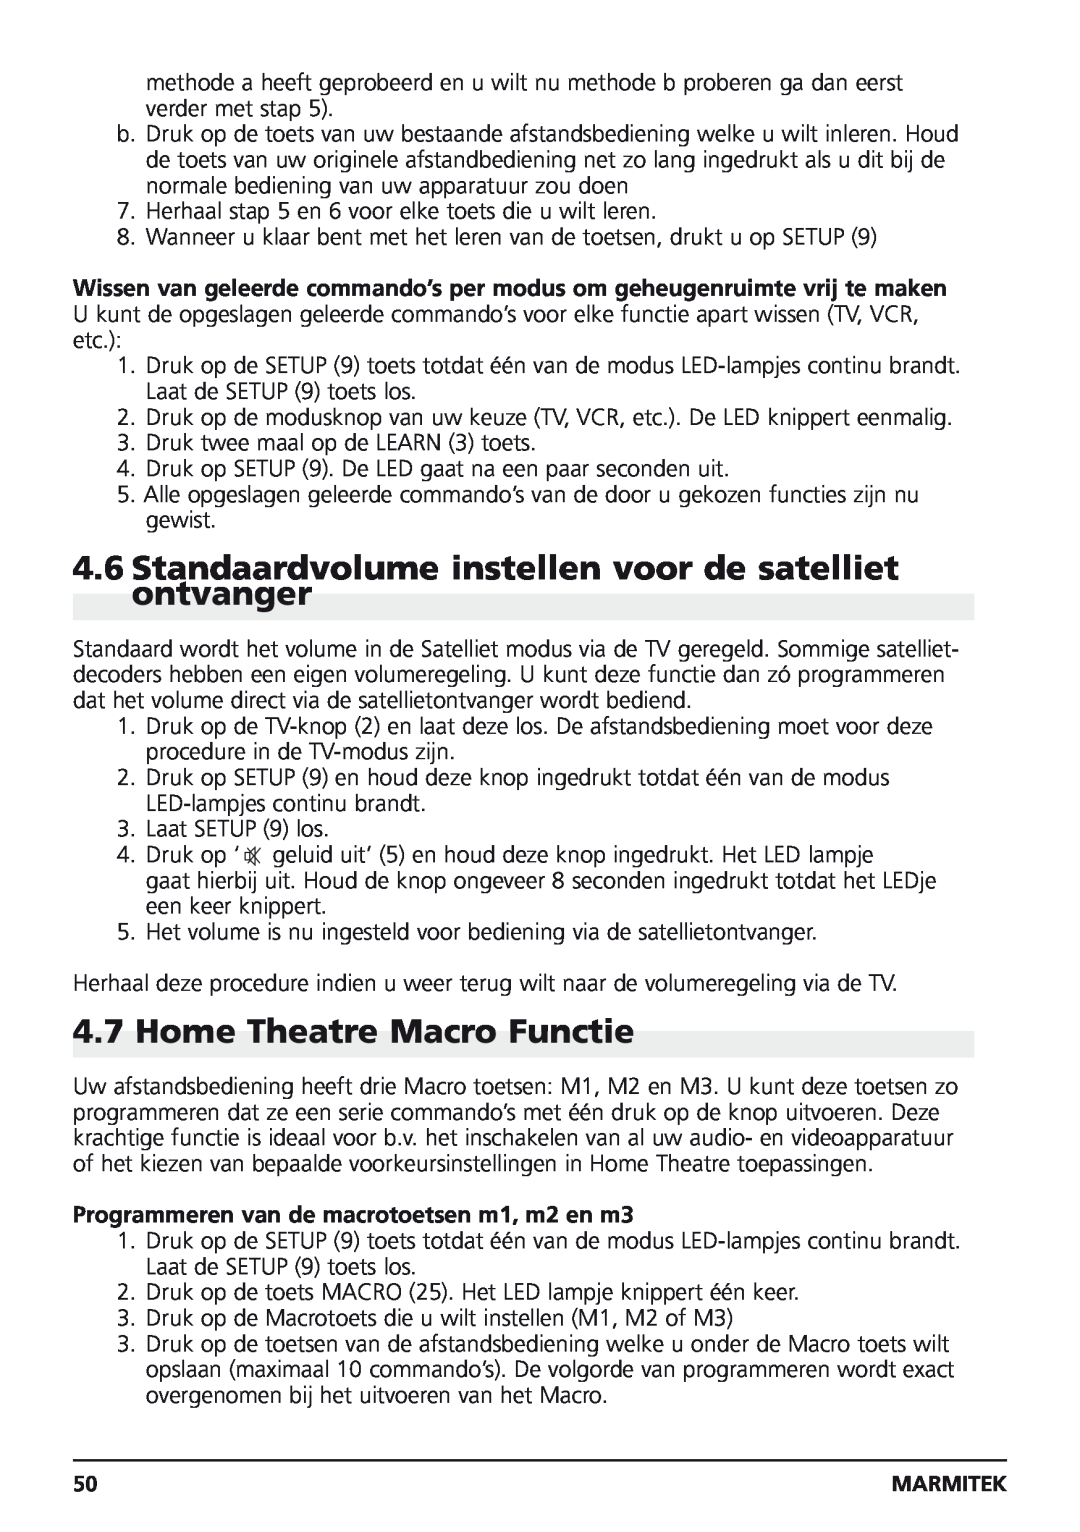 Marmitek Easycontrol 8 owner manual Standaardvolume instellen voor de satelliet ontvanger, Home Theatre Macro Functie 